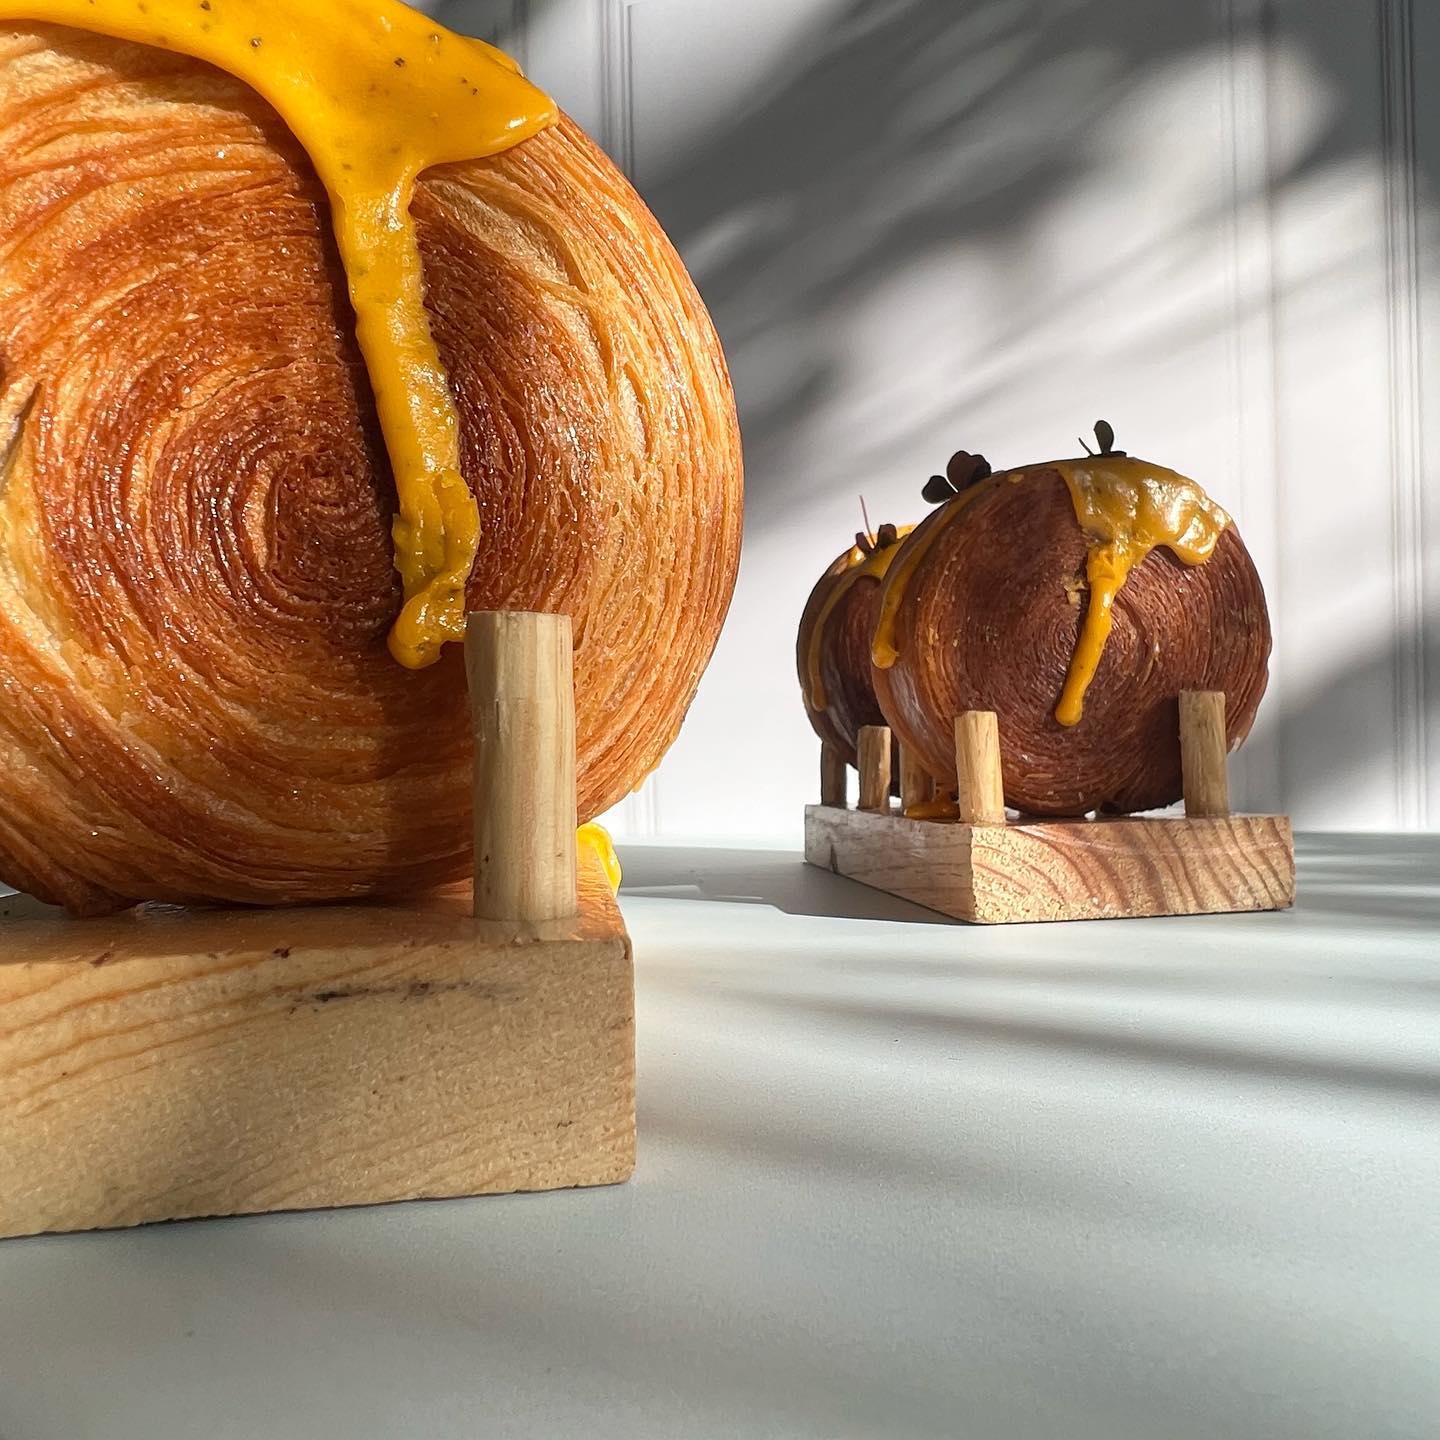 roulette croissant o supreme croissant o croissant roll, es un pan enrollado y relleno o cubierto 